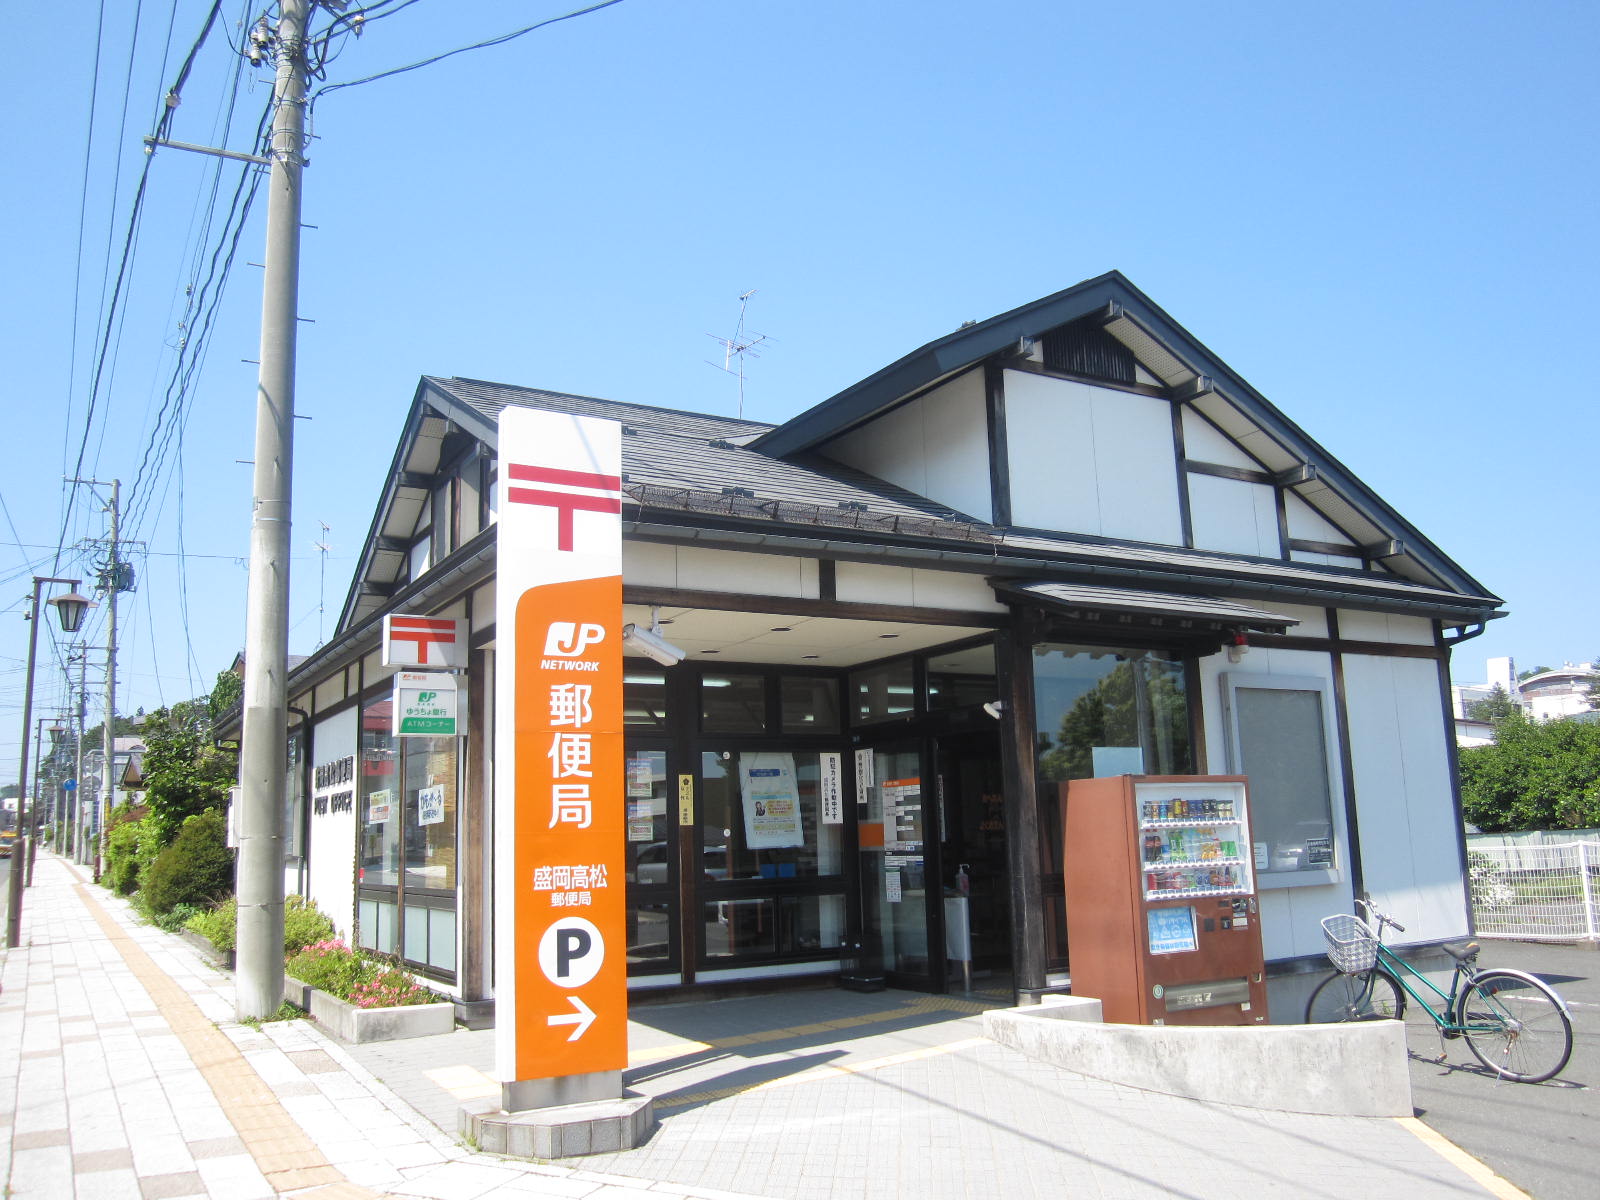 post office. 879m to Morioka Takamatsu post office (post office)